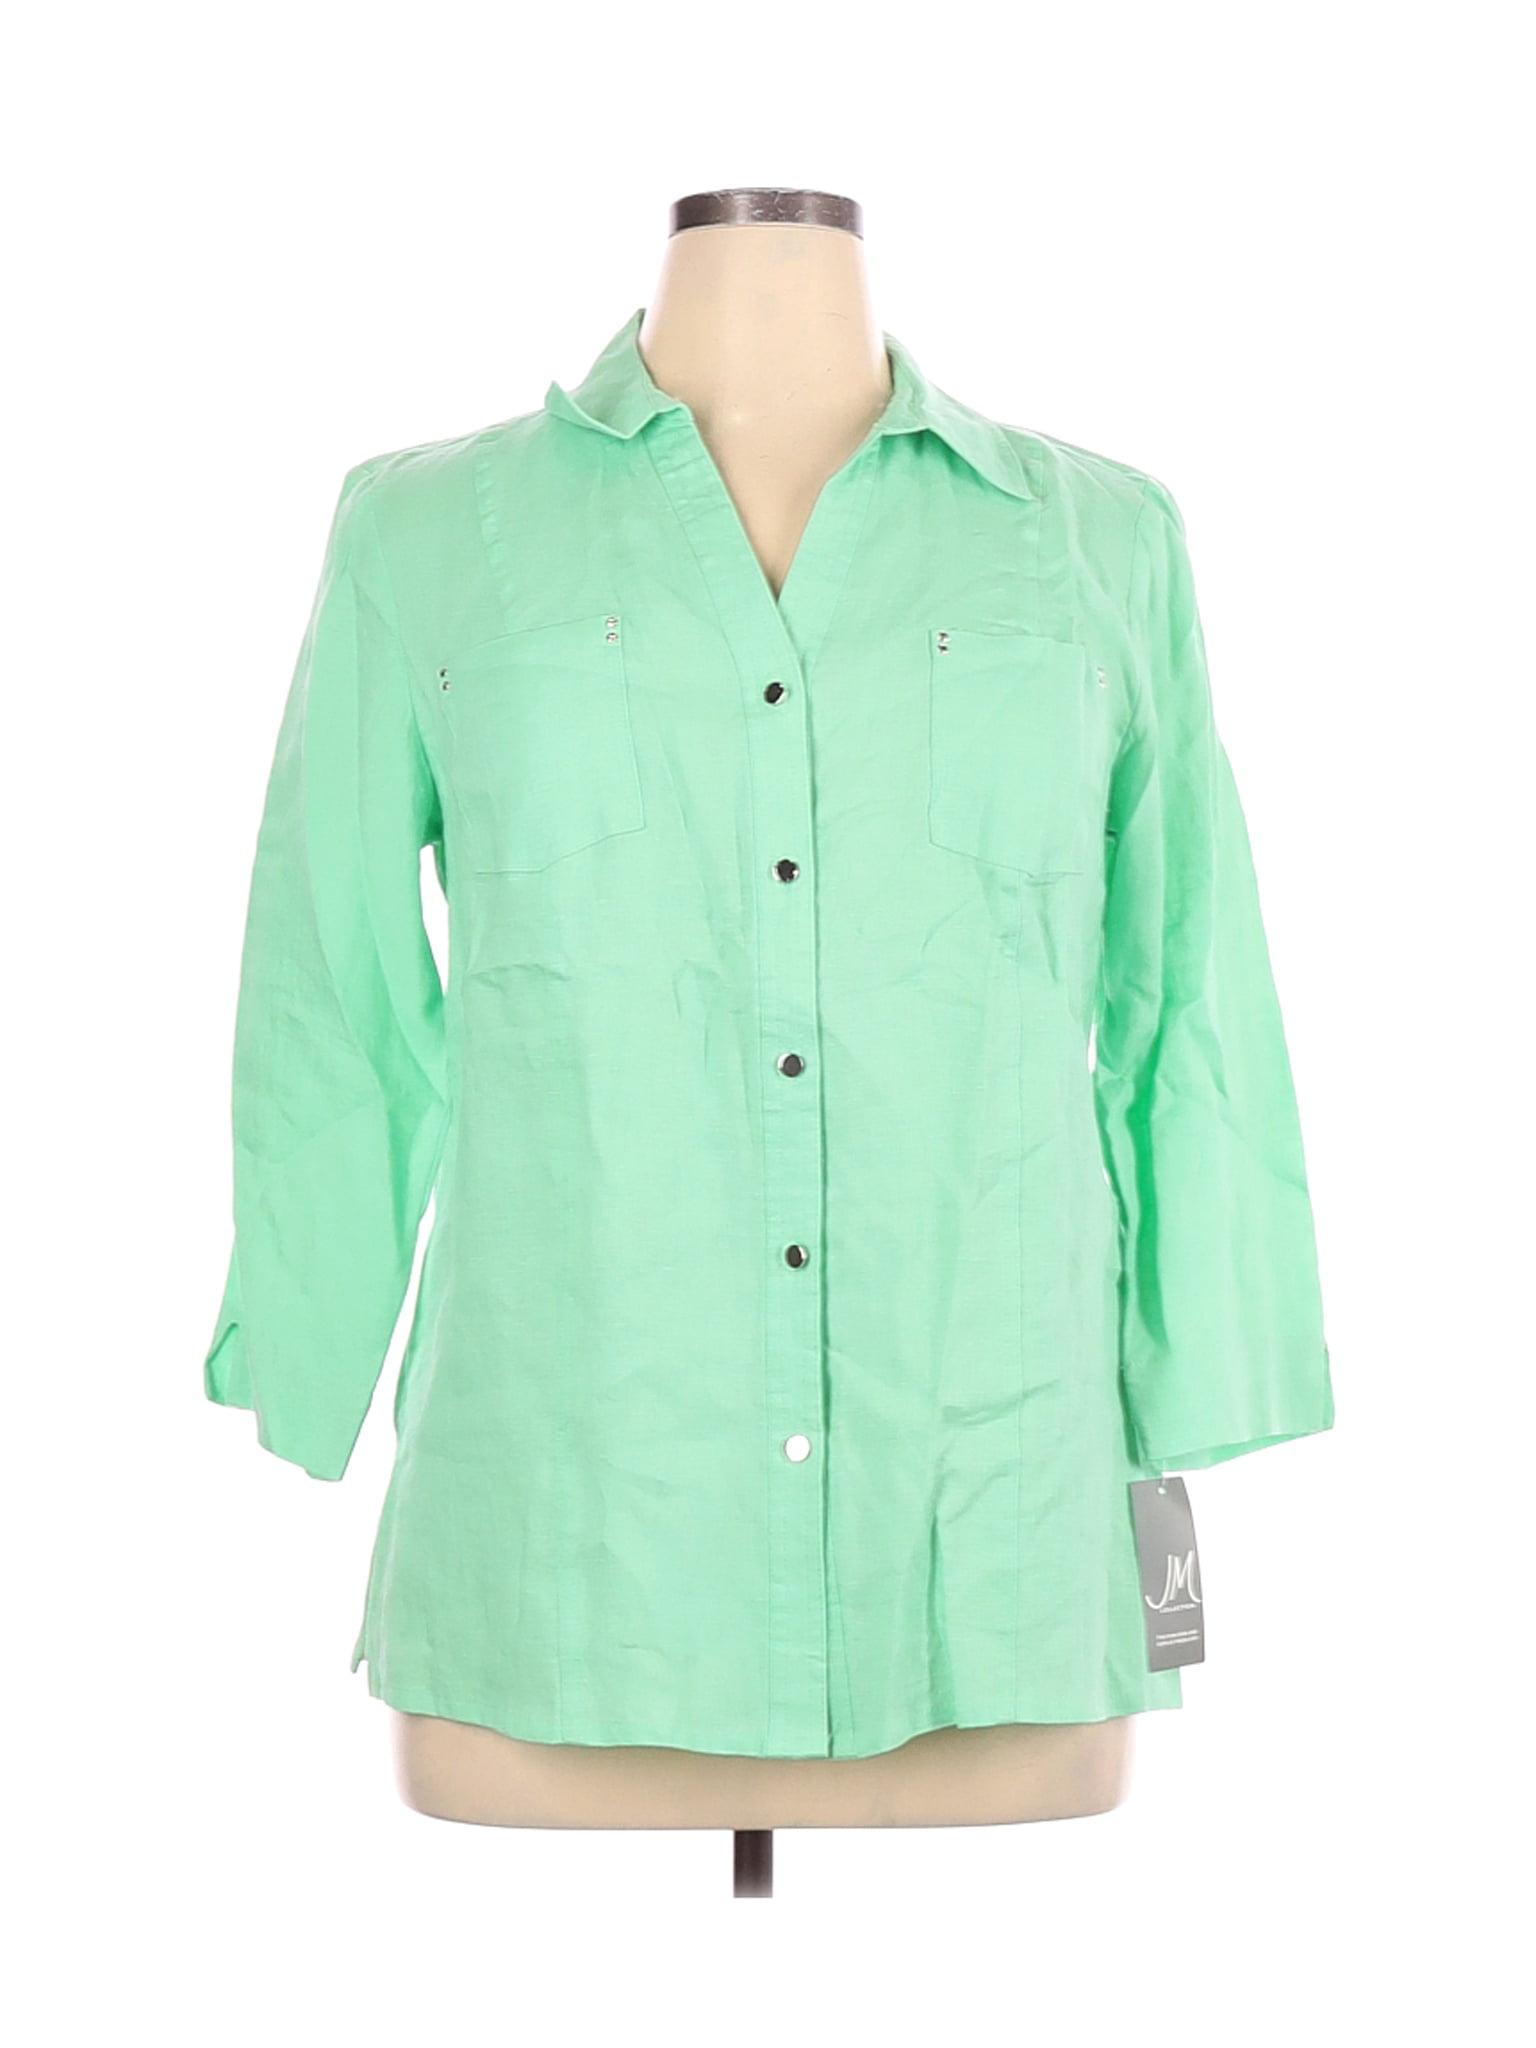 JM Collection Womens Plus Size Button Down Linen Shirt 